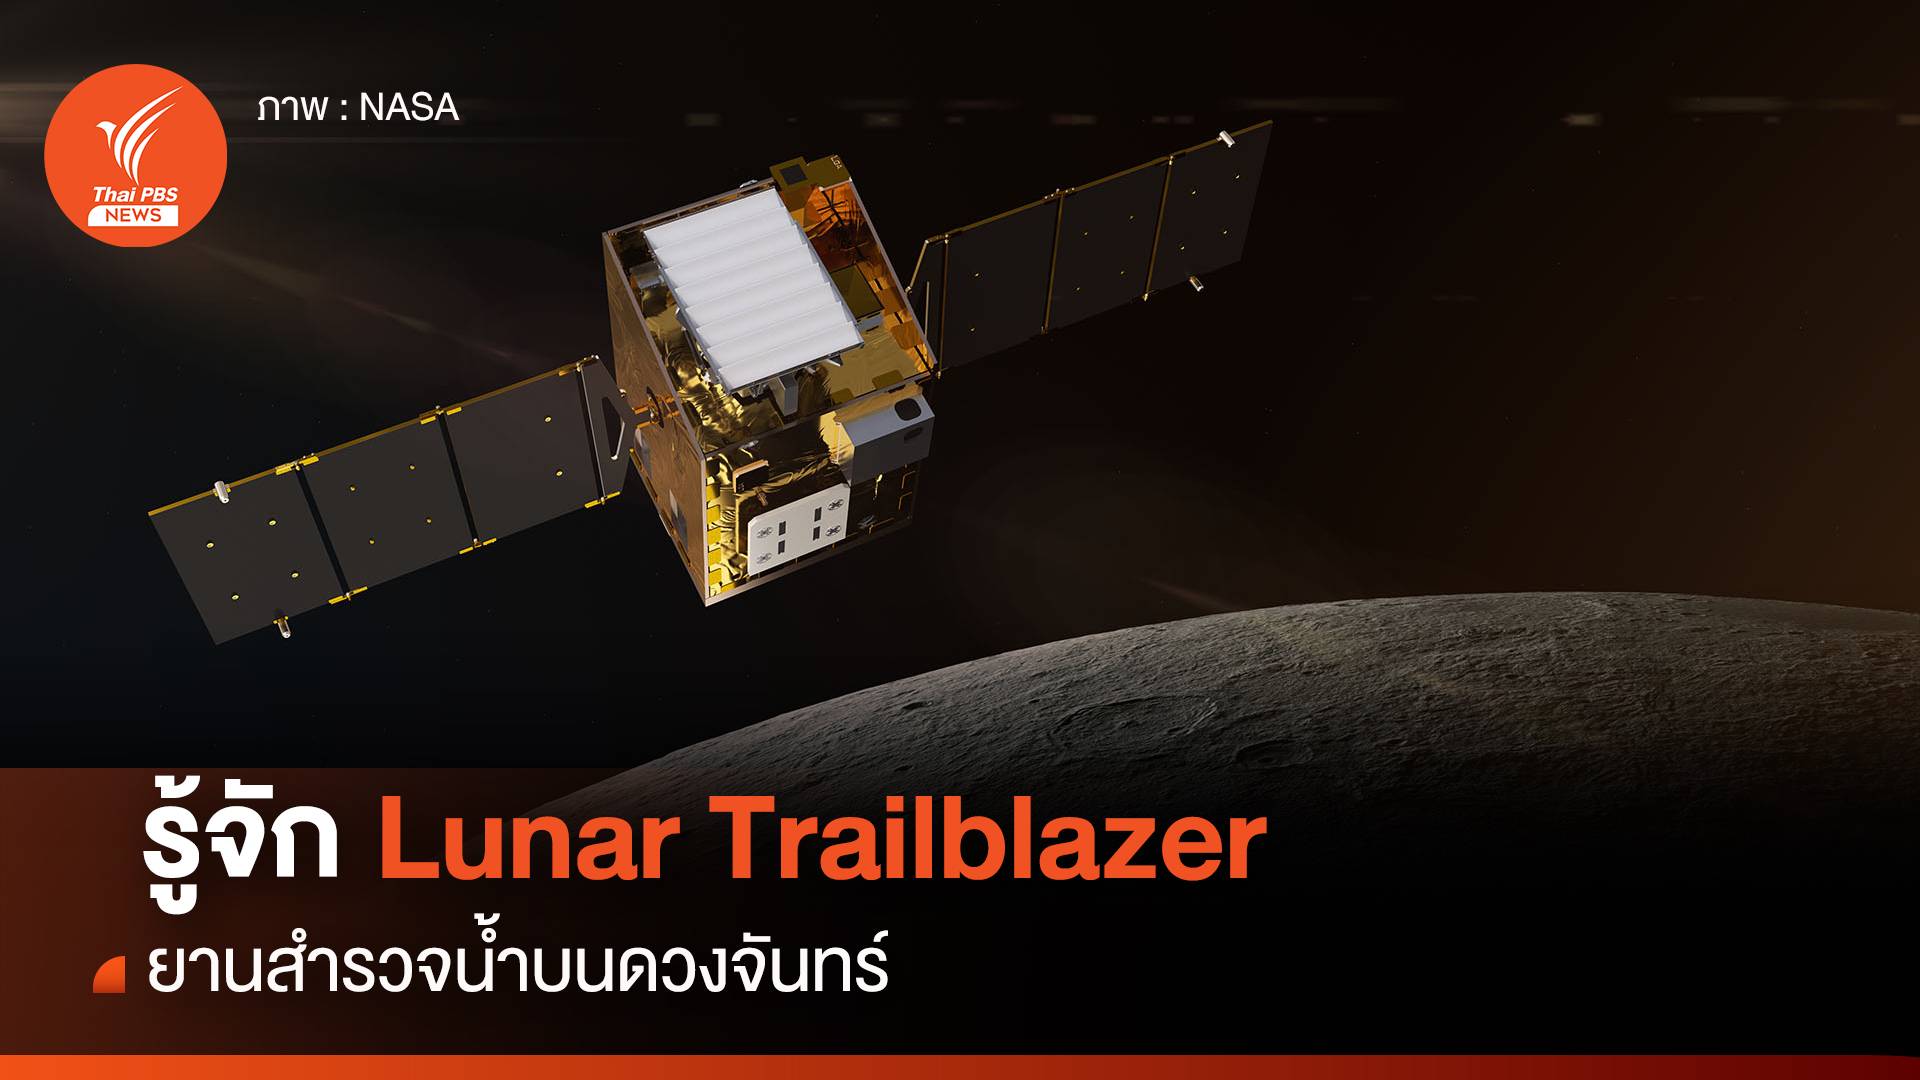 รู้จัก Lunar Trailblazer ยานสำรวจน้ำบนดวงจันทร์